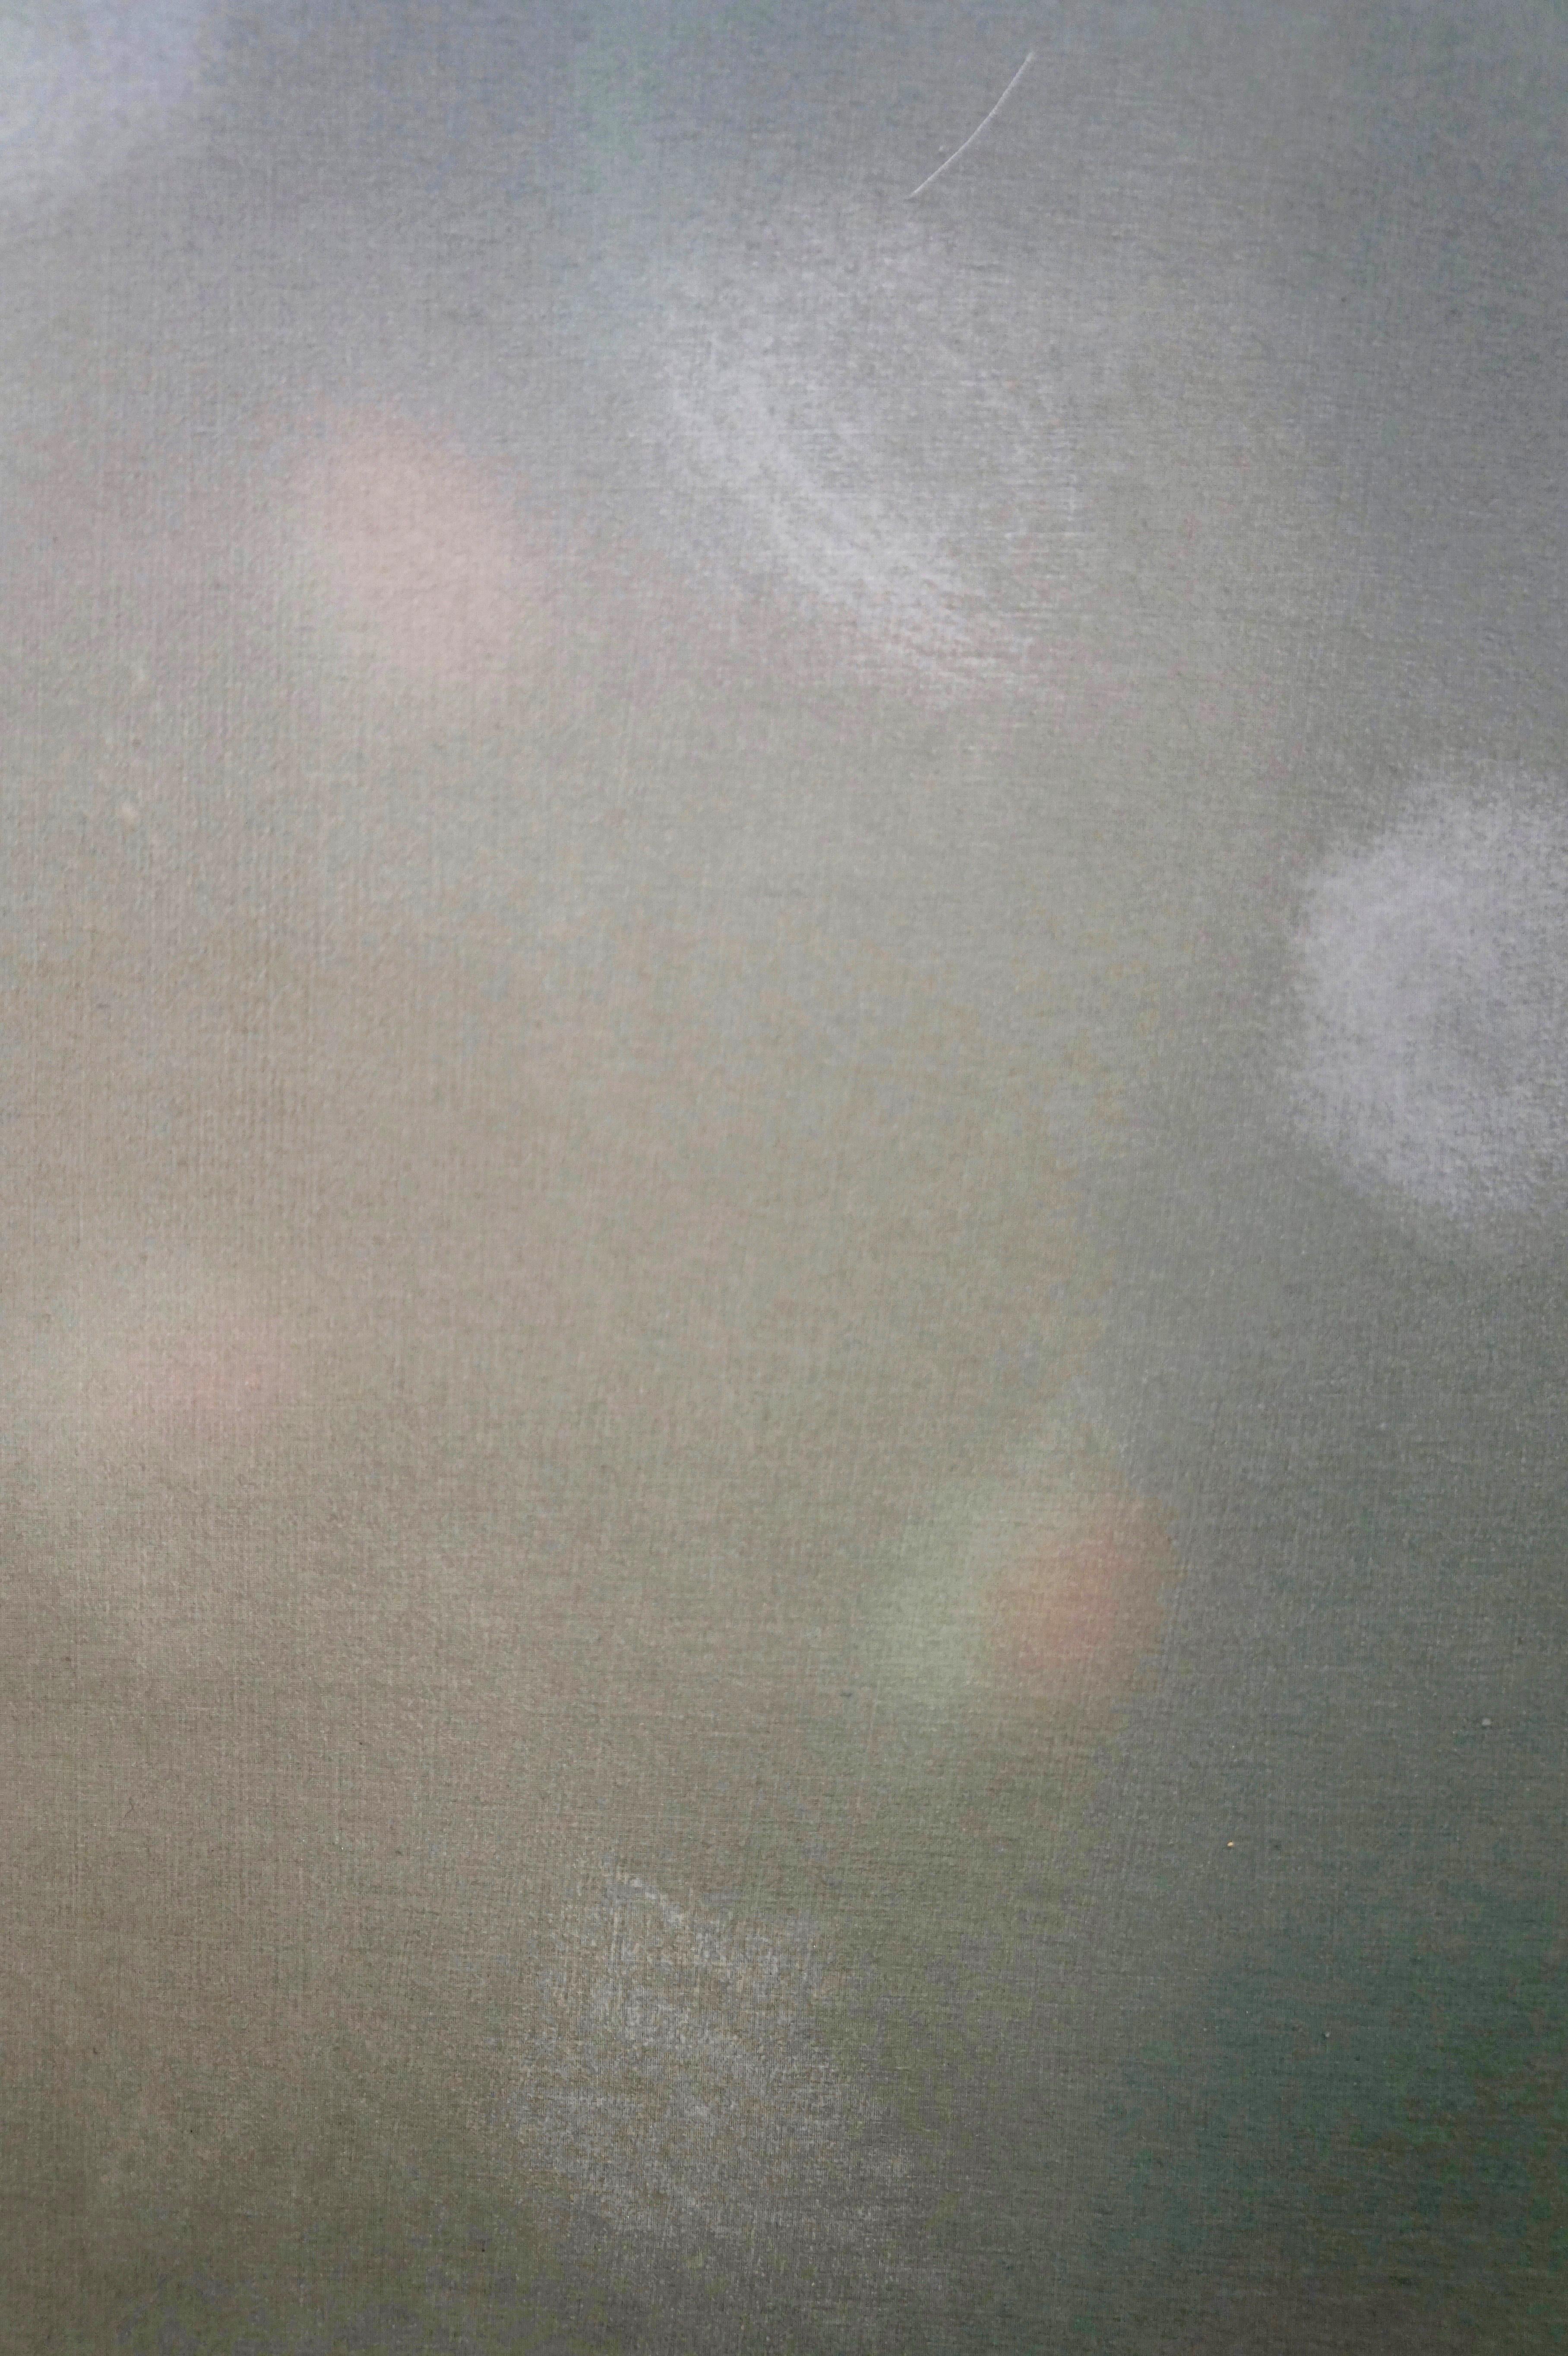 THE LONG SUMMER - Zeitgenössisches abstraktes Gemälde in Mischtechnik, Grün, Licht  – Painting von Heather Hartman